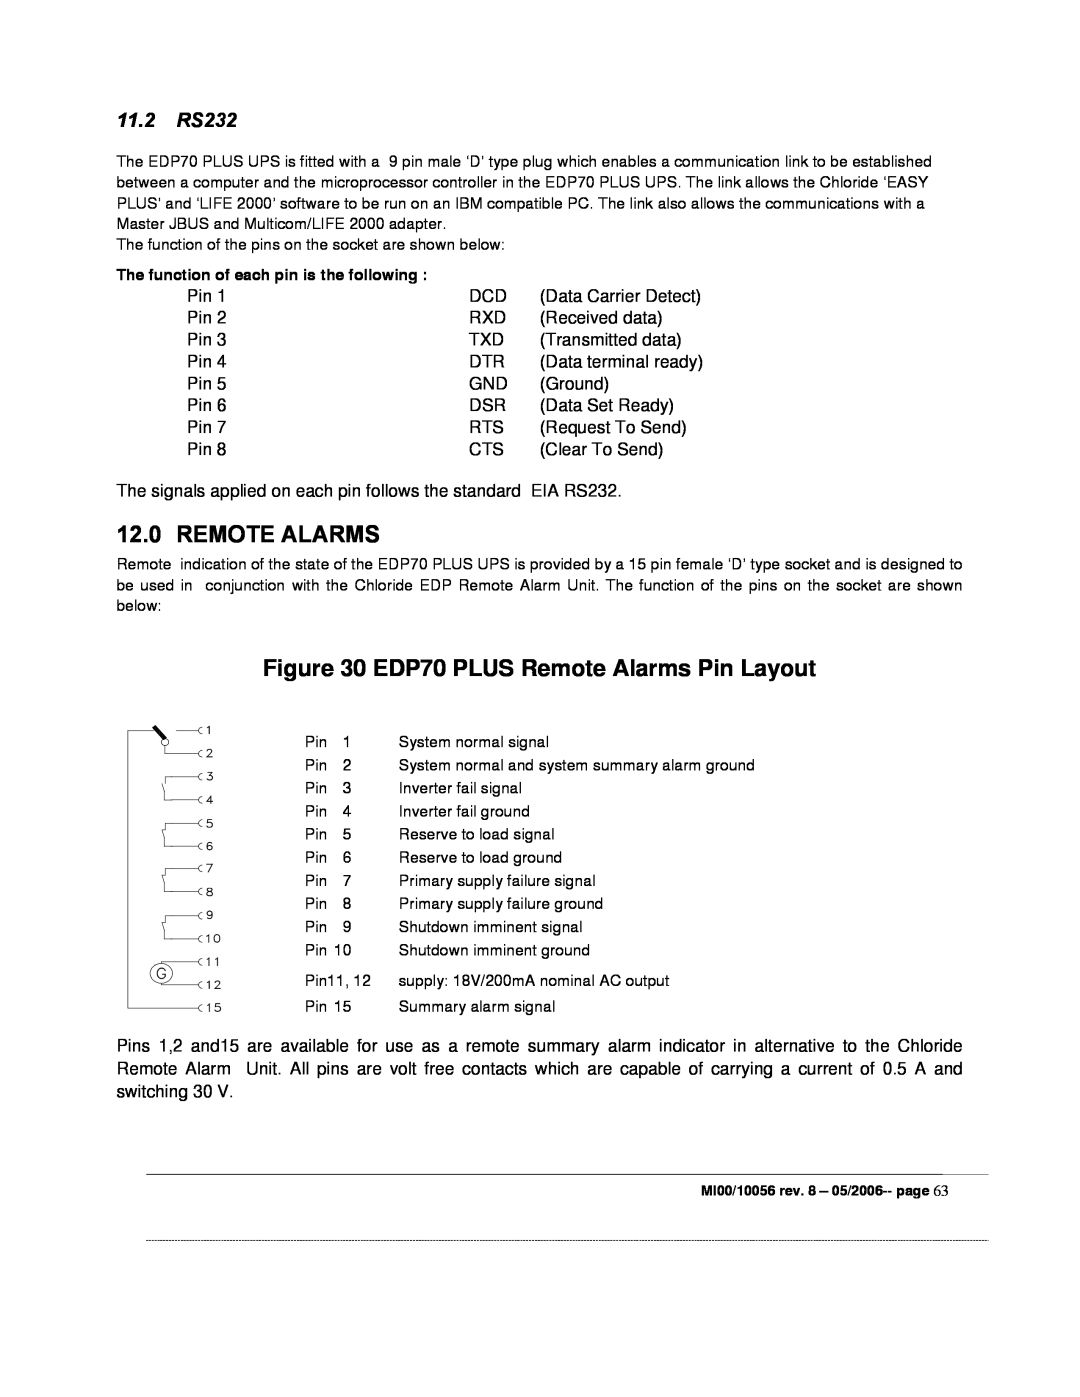 Garmin manual EDP70 PLUS Remote Alarms Pin Layout, 11.2 RS232 